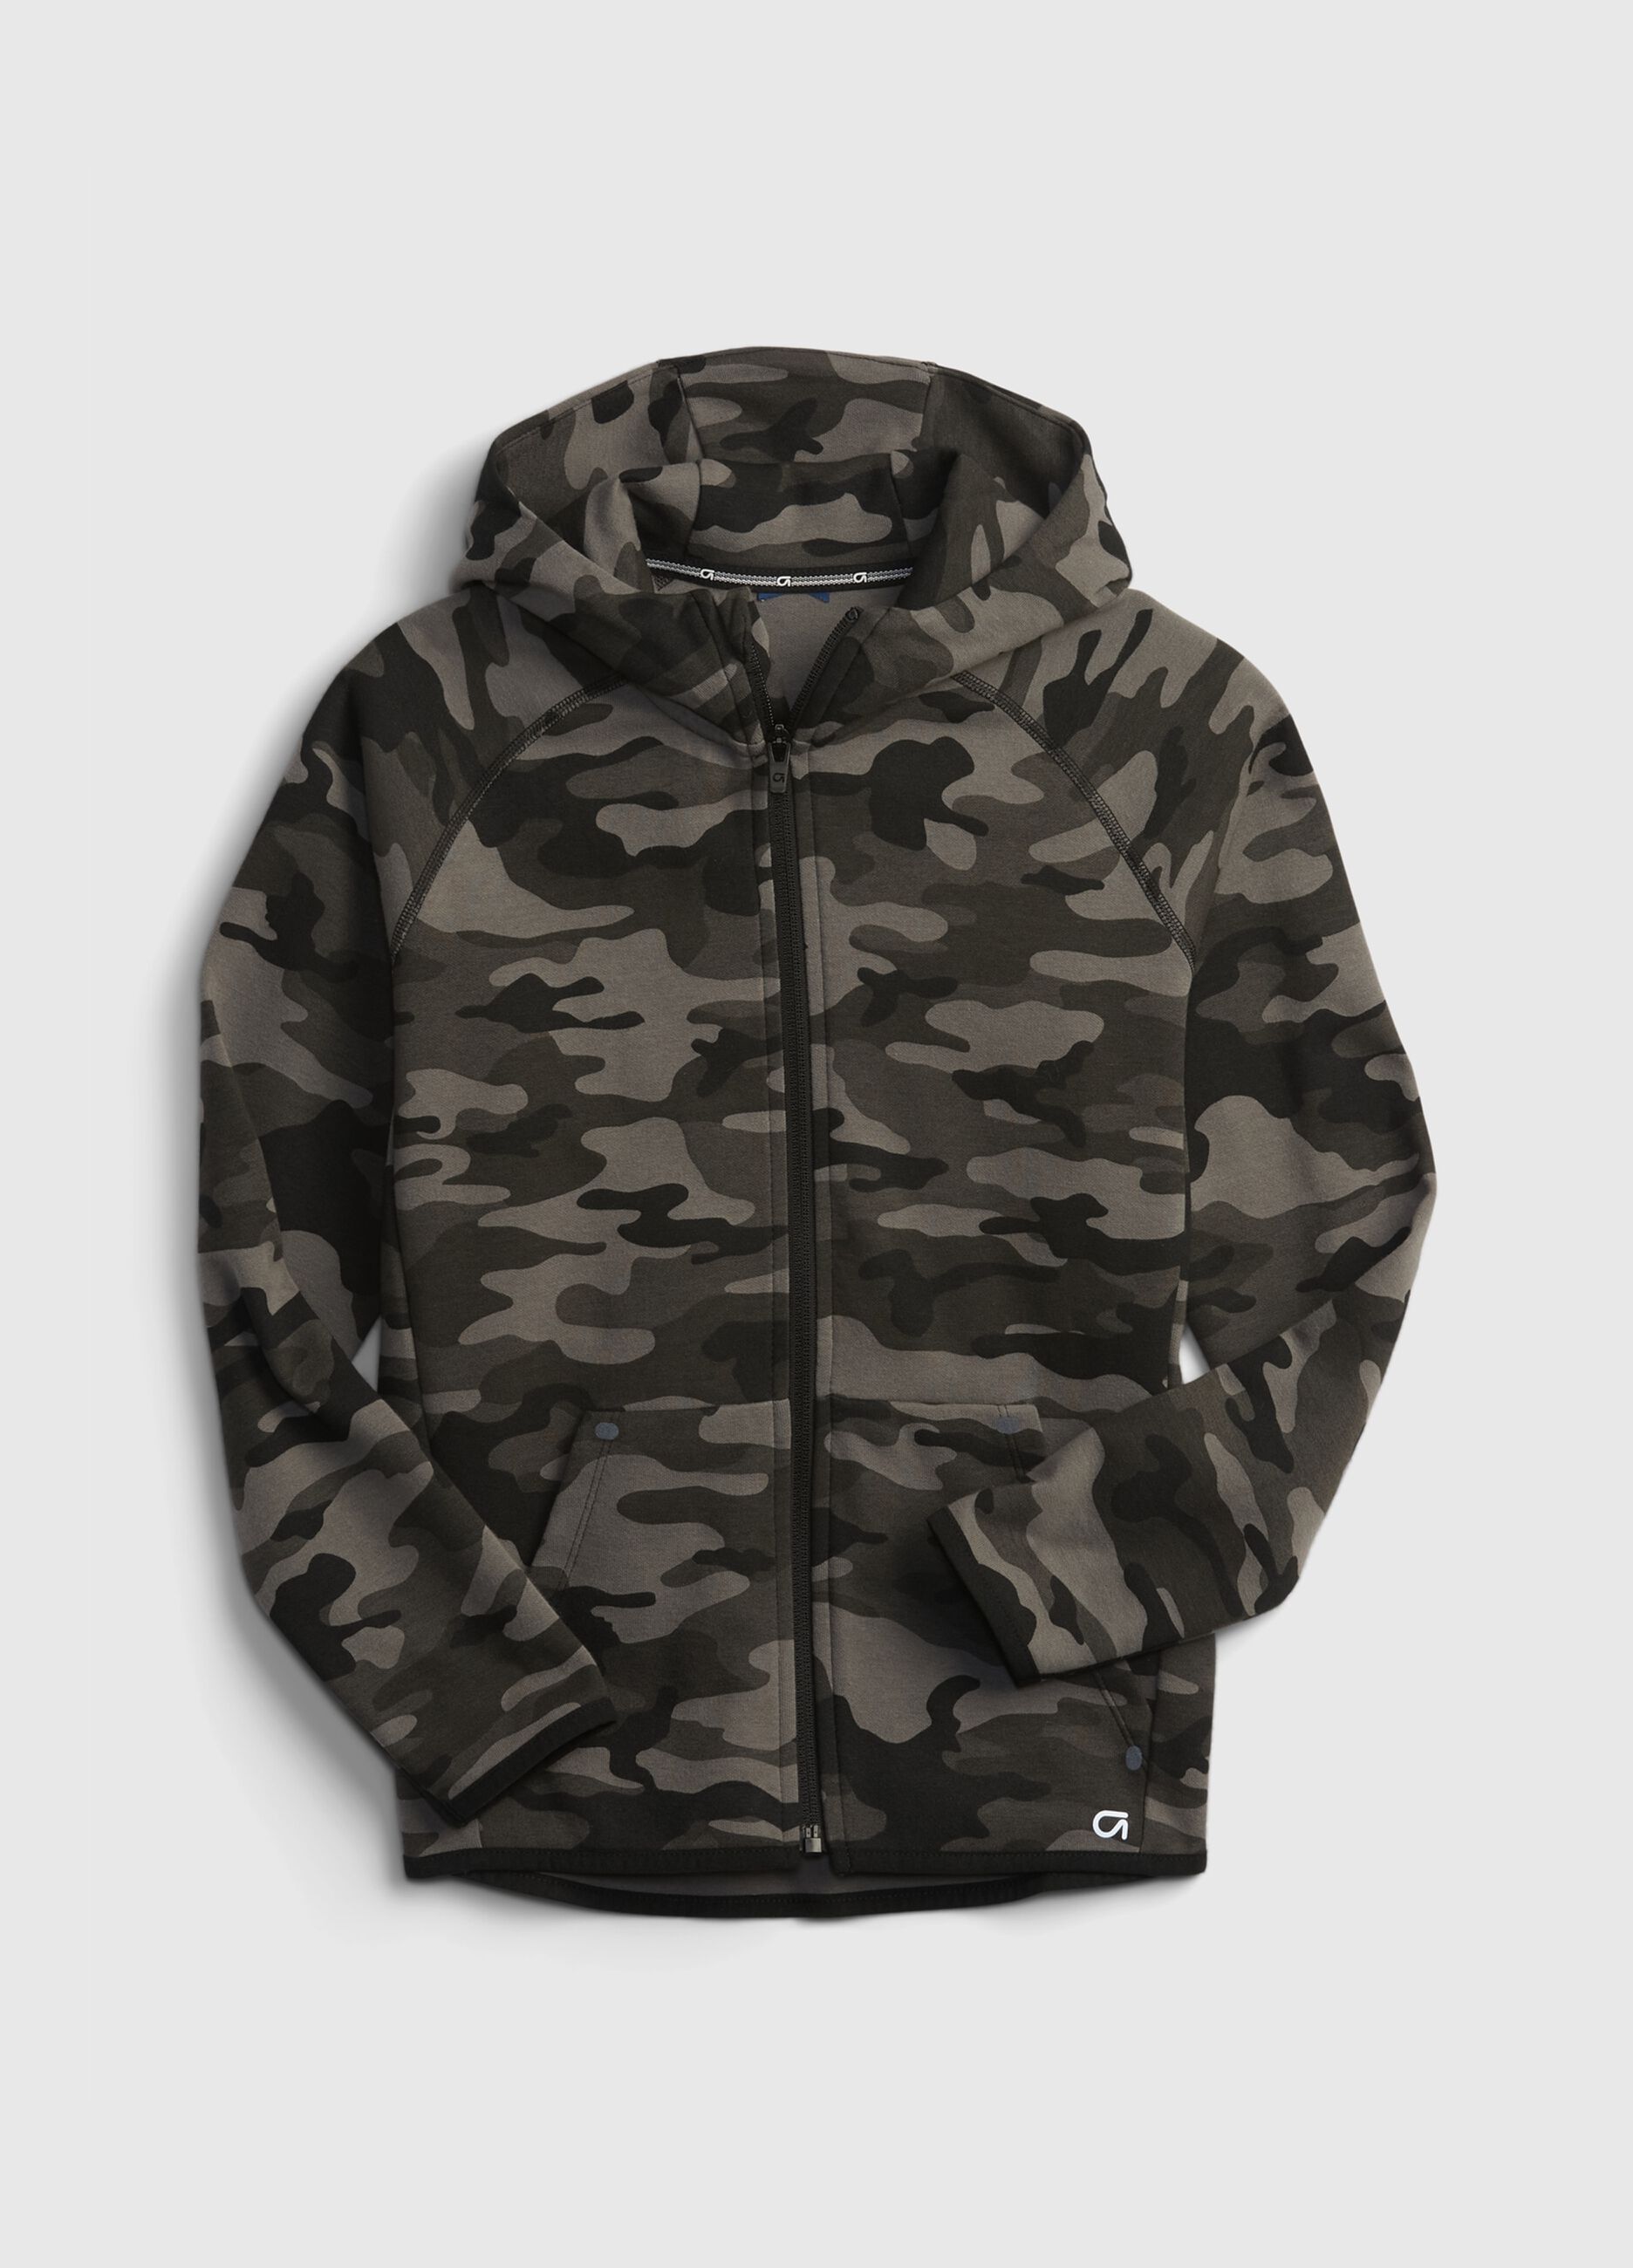 Full-zip camo hoodie with raglan sleeves